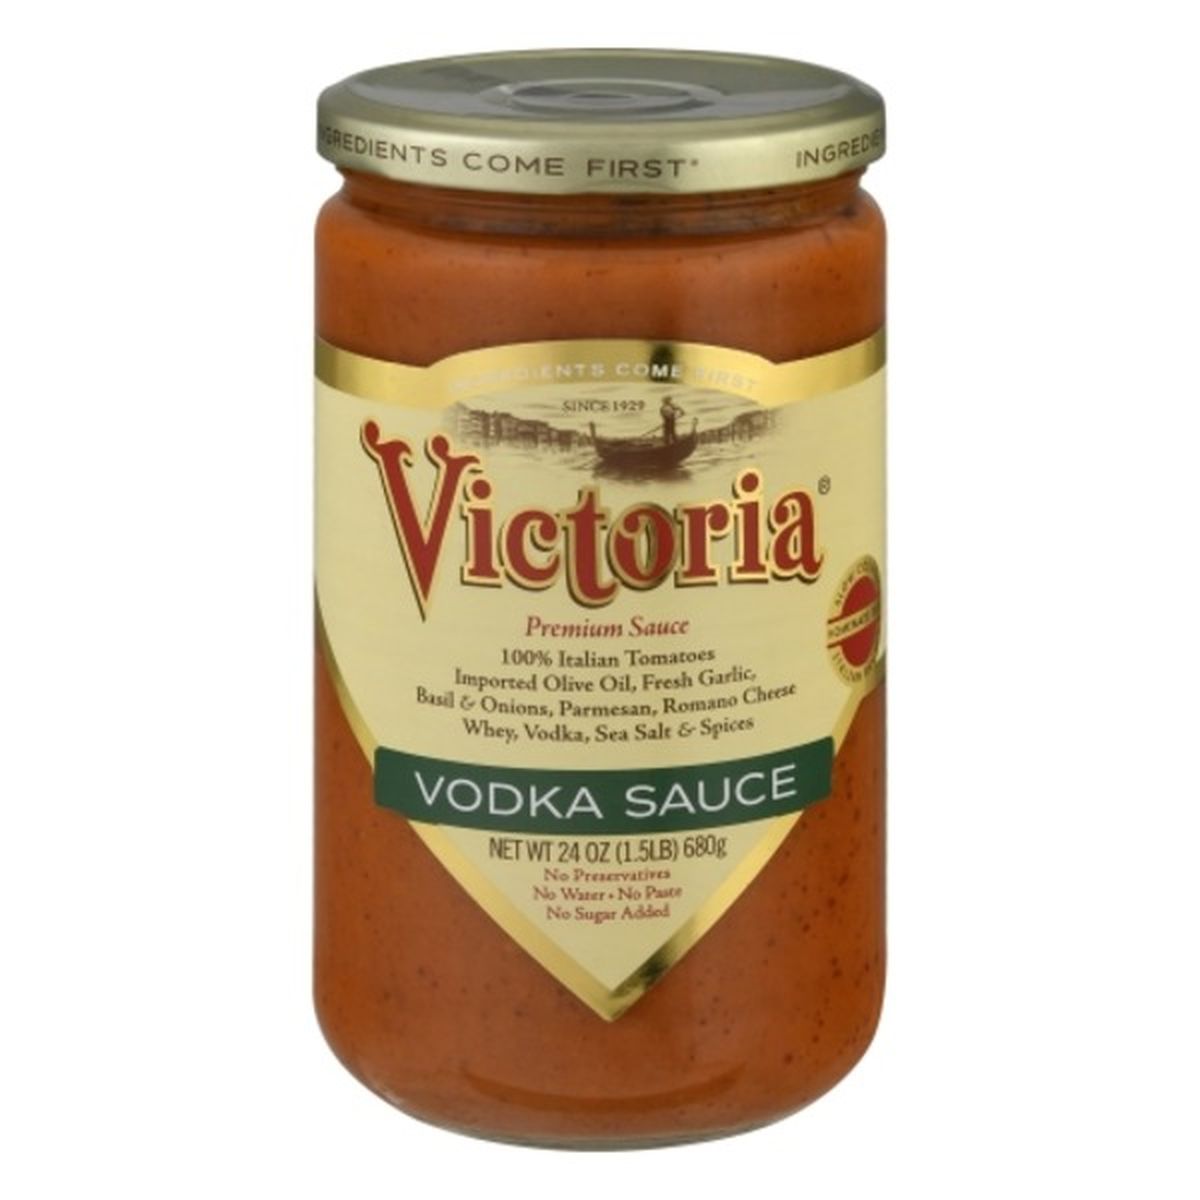 Calories in Victoria Sauce, Vodka, Premium